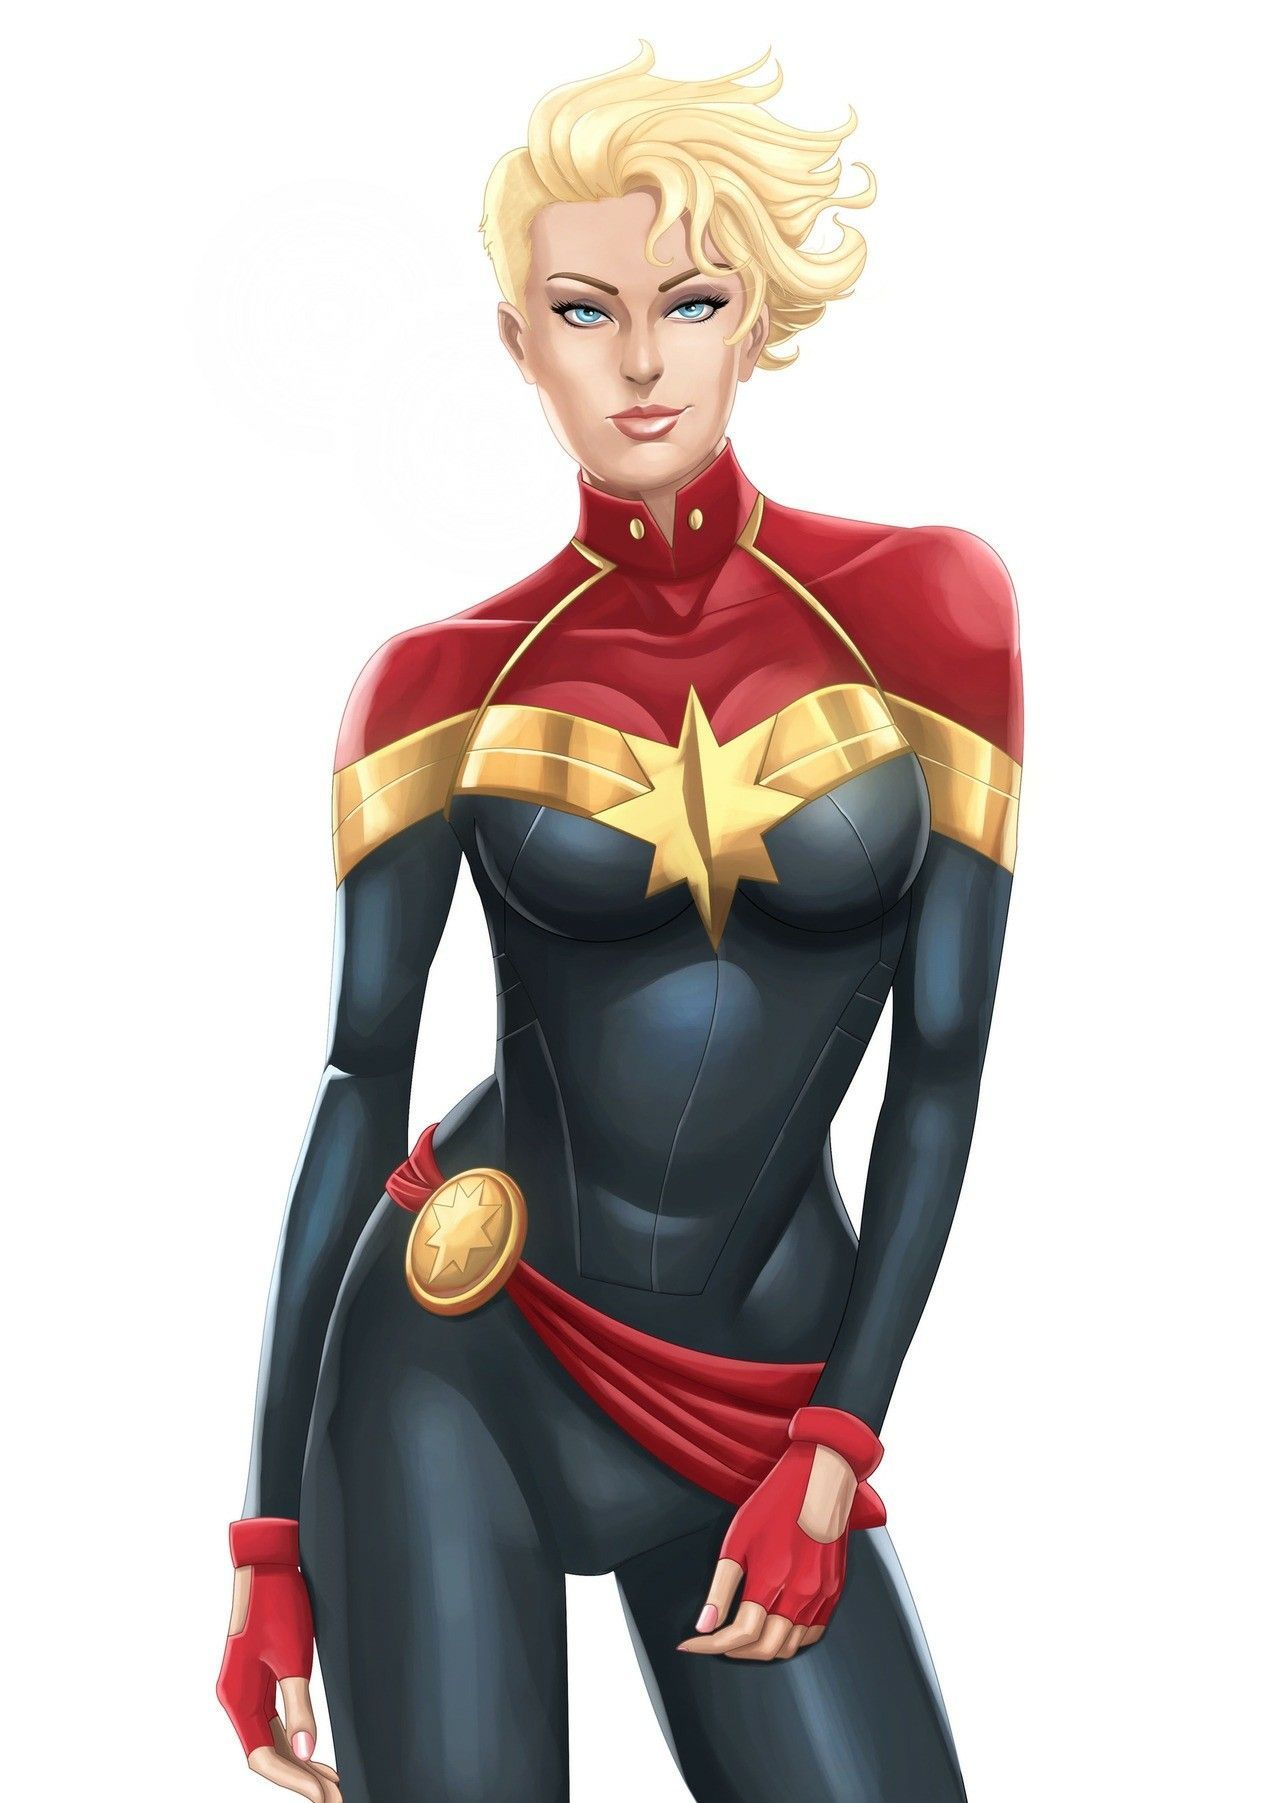 Captain Marvel (Carol denverse). Marvel animation